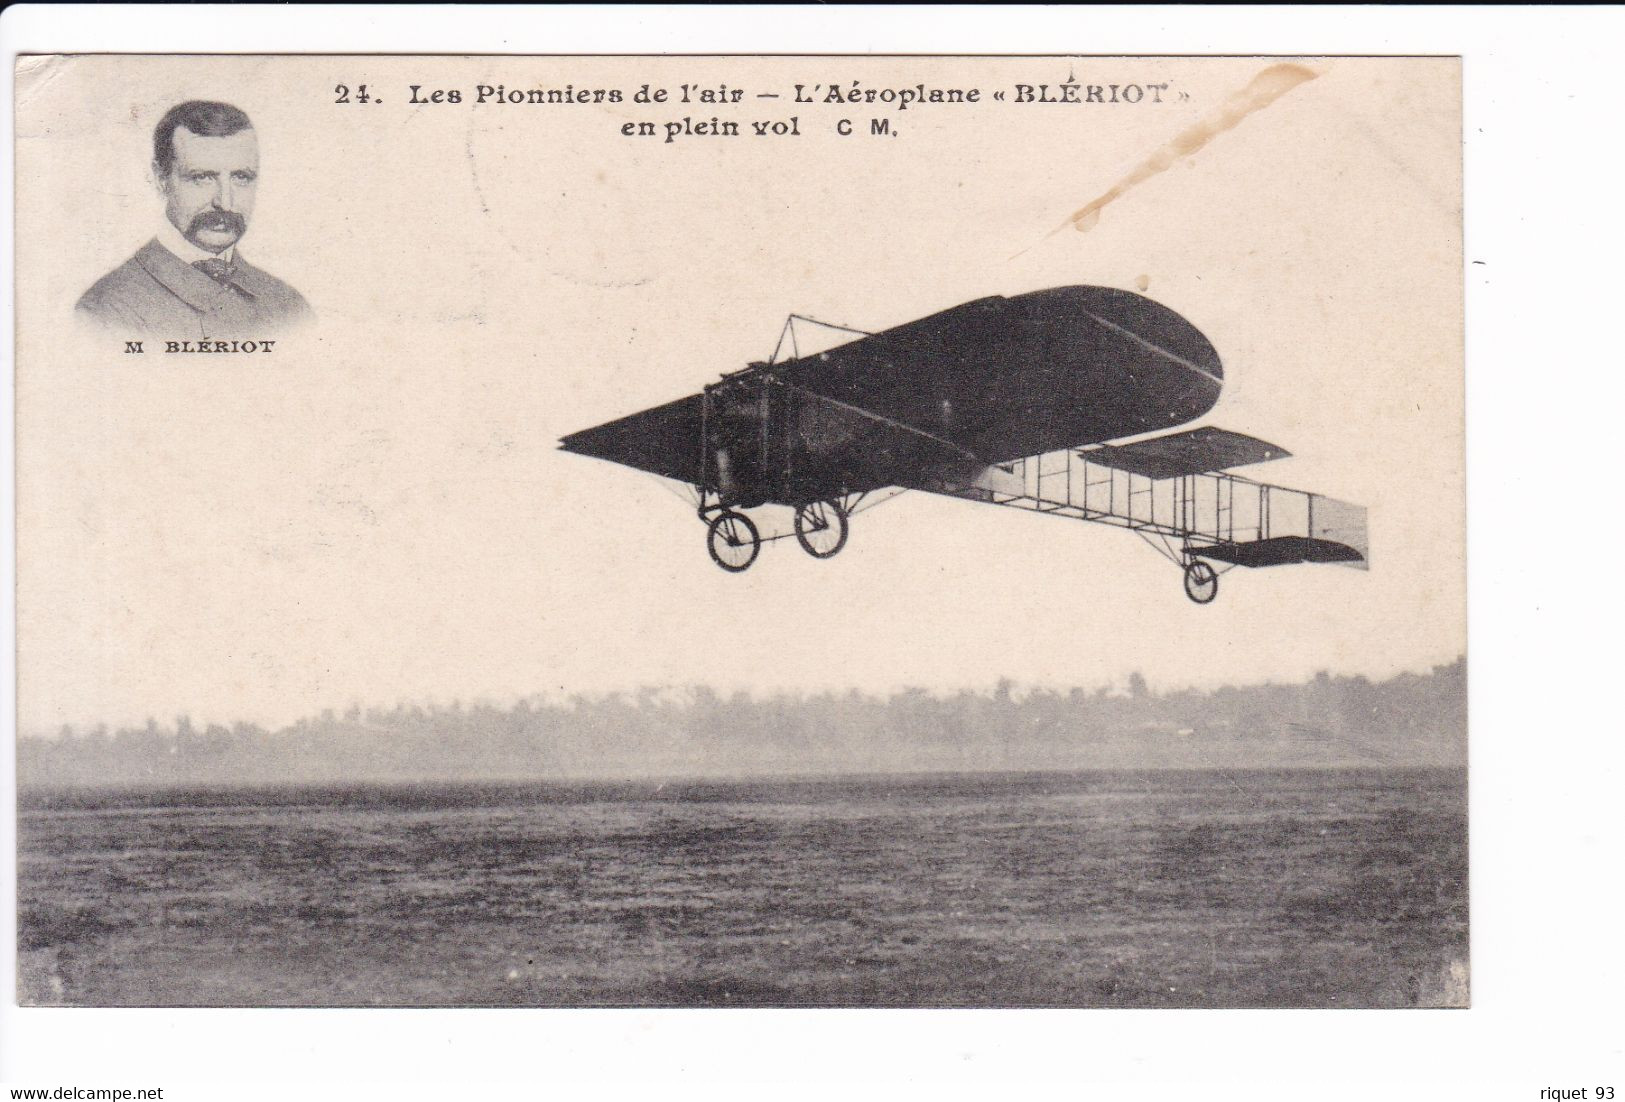 24 - Les Pionniers De L'air - L'Aéroplane "BLERIOT" - (Portrait De M. BLERIOT) - Flieger